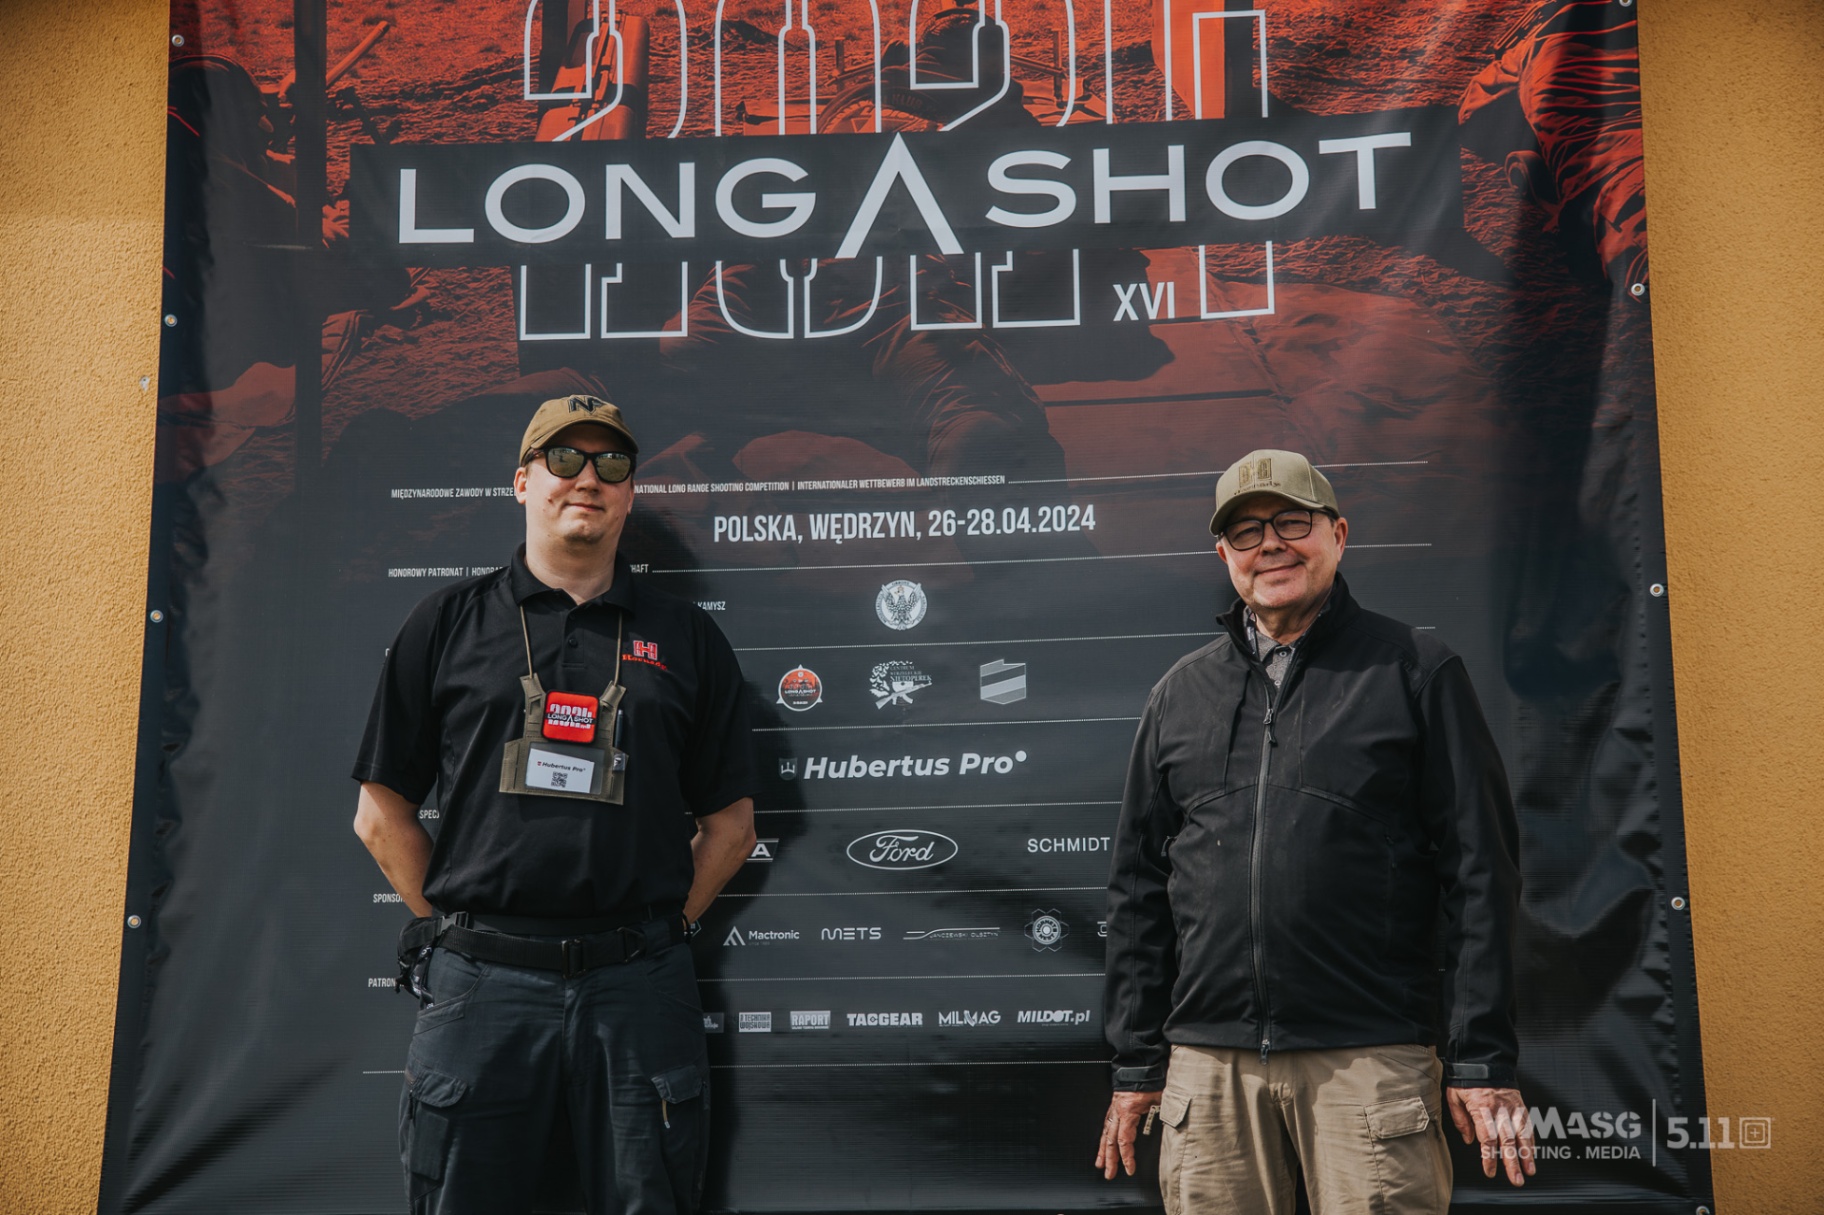 Long Shot 2024 - main sponsor Hubertus Pro Hunting